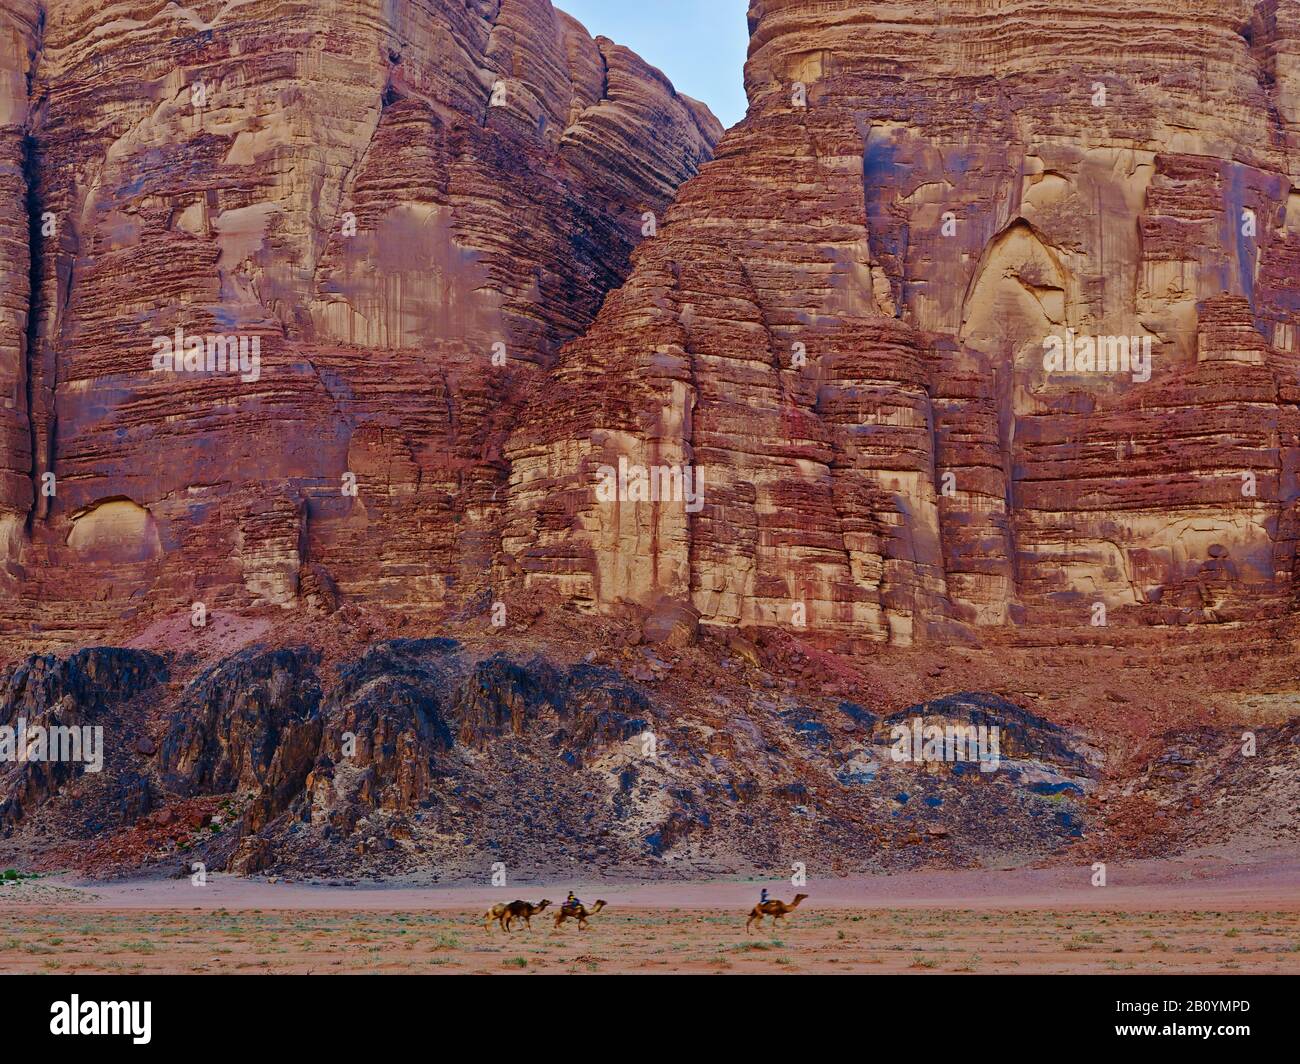 Camellos delante de la cara de roca en Wadi Rum, Provincia de Aqaba, Jordania, Oriente Medio, Foto de stock